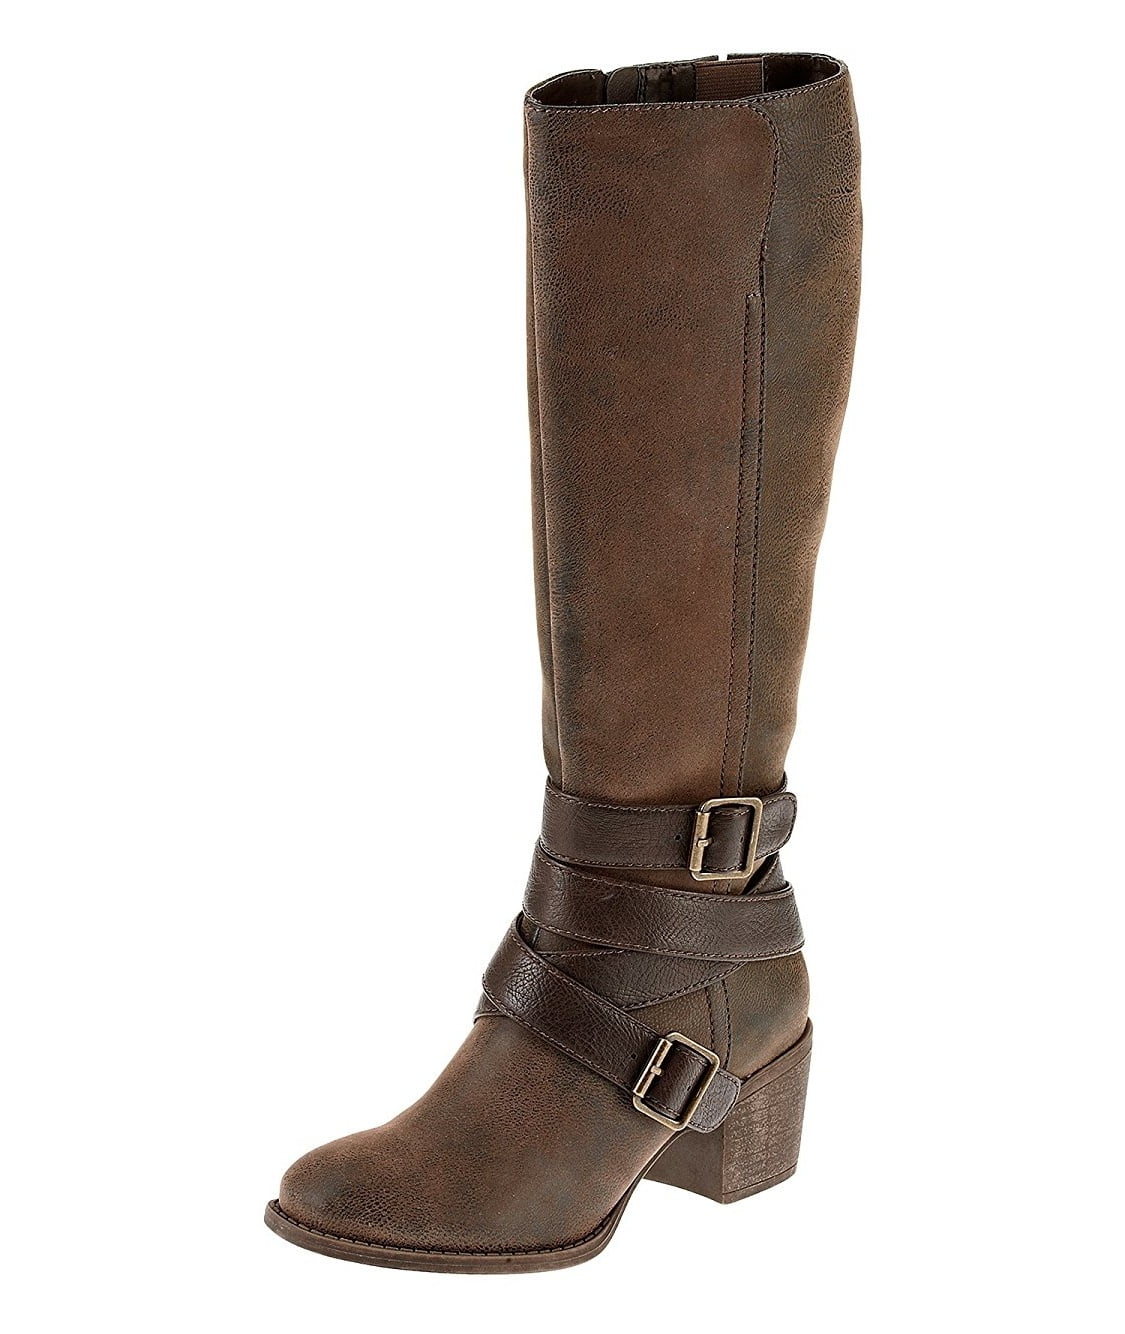 Ruff Hewn Maddock Casual Tall Boots - Walmart.com